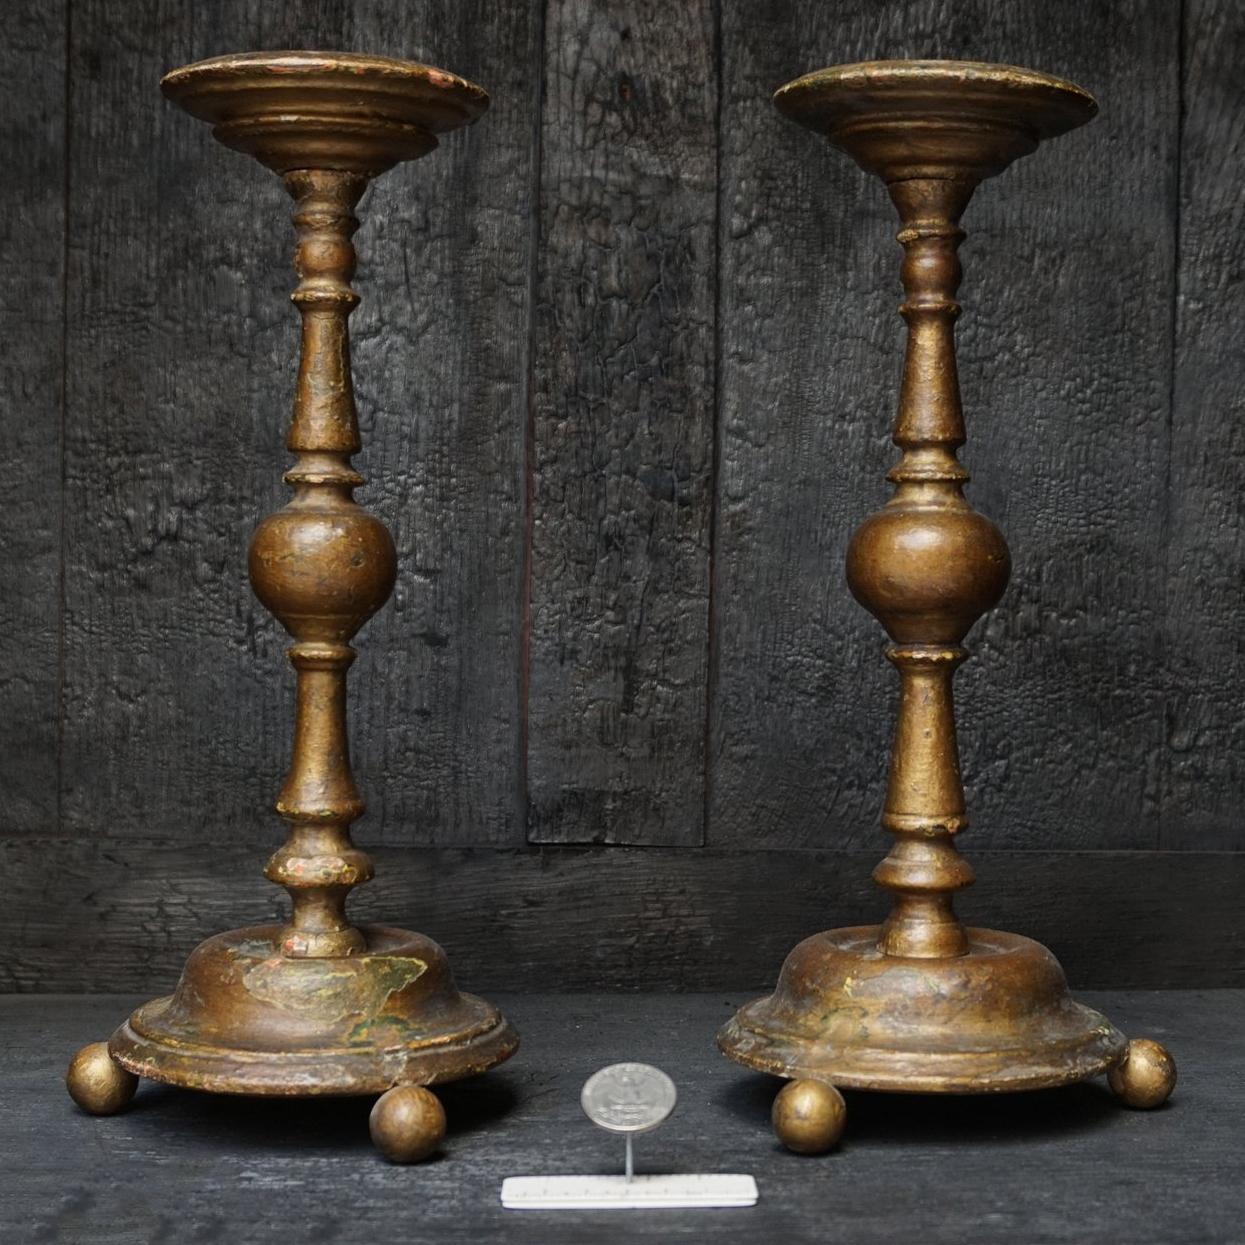 Magnifique ensemble ancien de deux grands chandeliers polychromes français du XVIIIe siècle. Les multiples couches de bois doré ou de peinture dorée étaient censées donner au bois un aspect très chique, et c'est ce qui s'est produit. 
Regardez